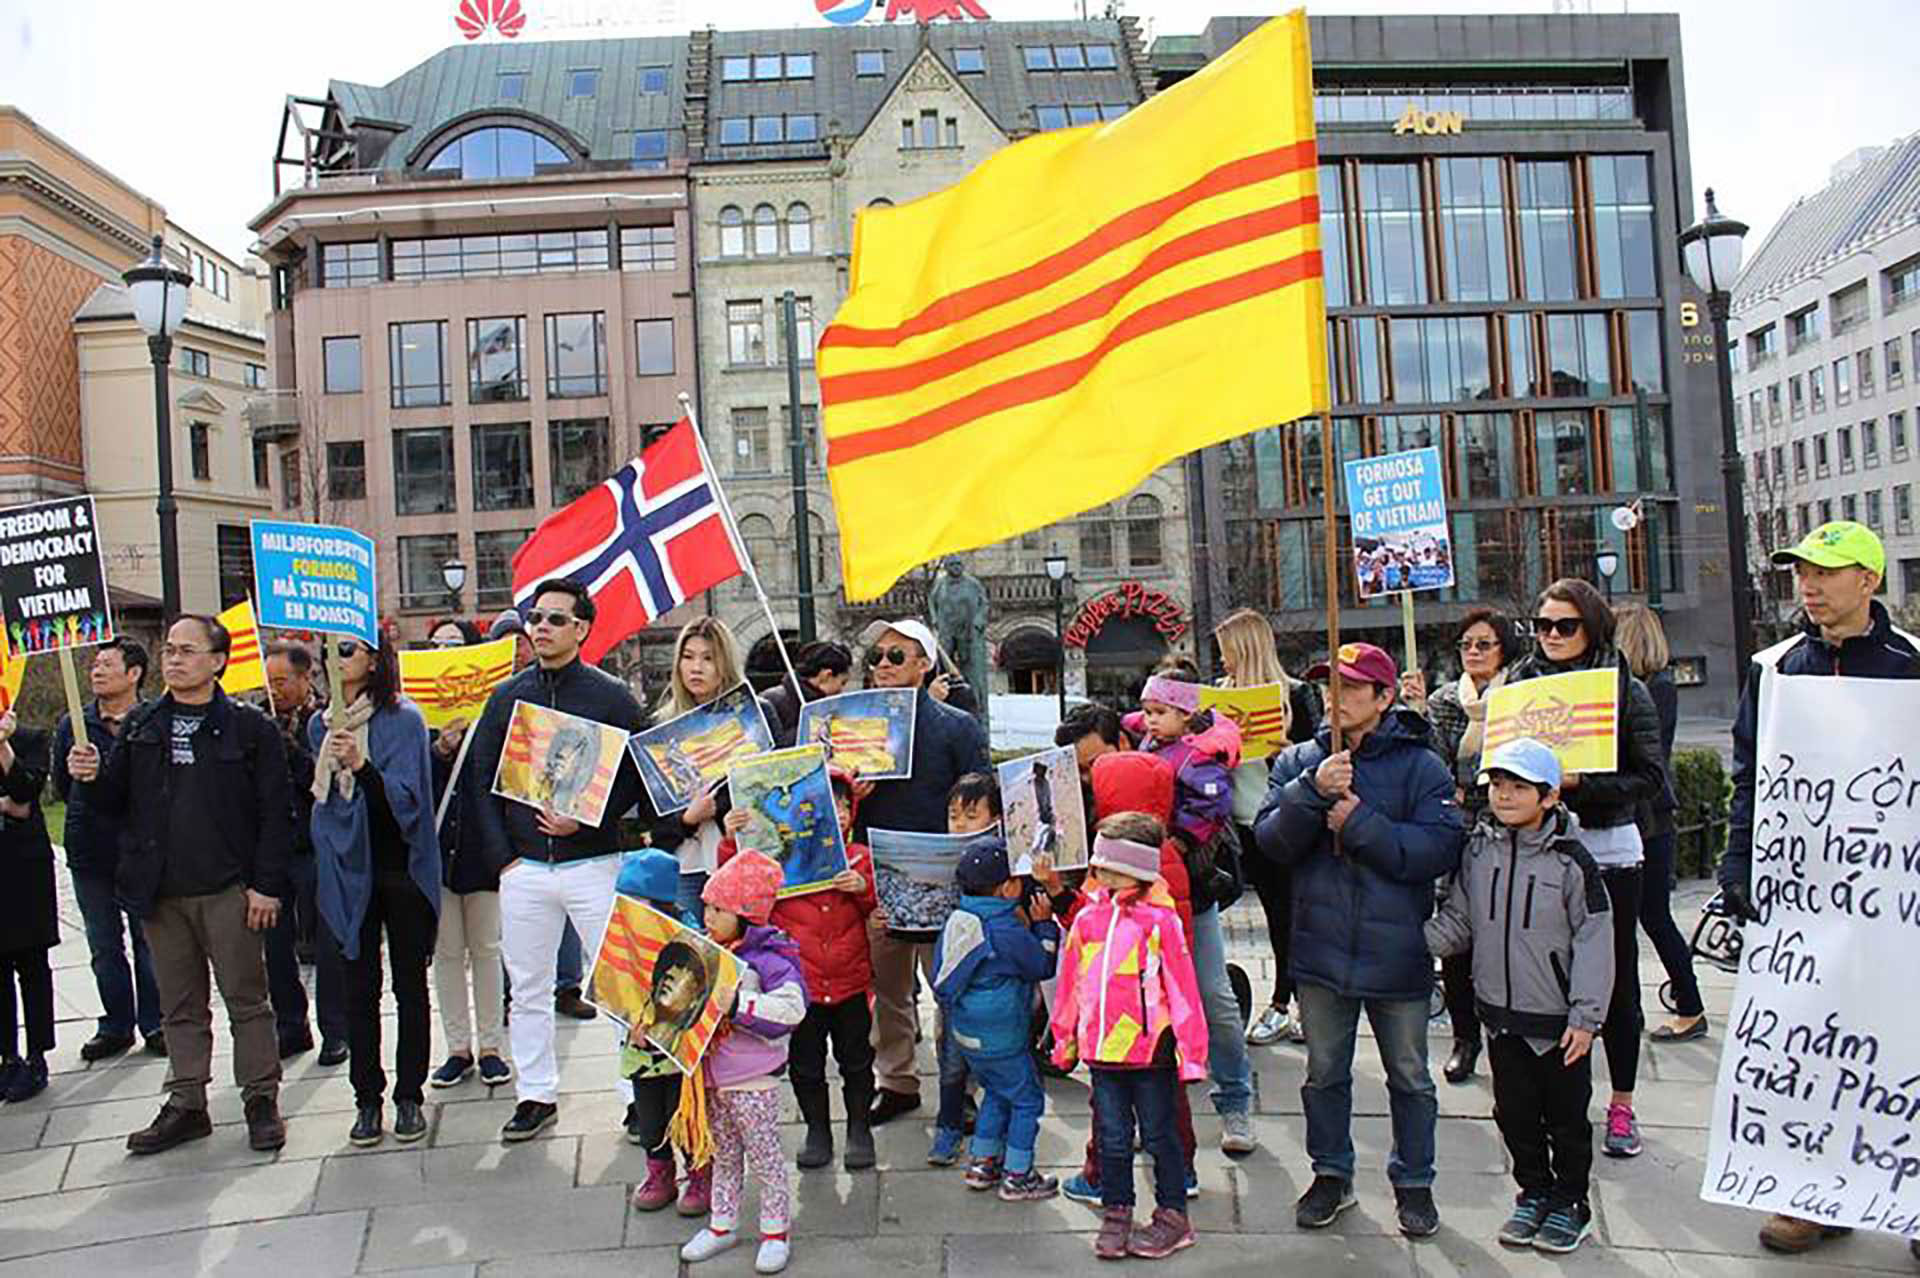  Norsk-vietnamesere demonstrerer foran Stortinget, mars 2017. Med vietnamesisk og norsk flagg. 